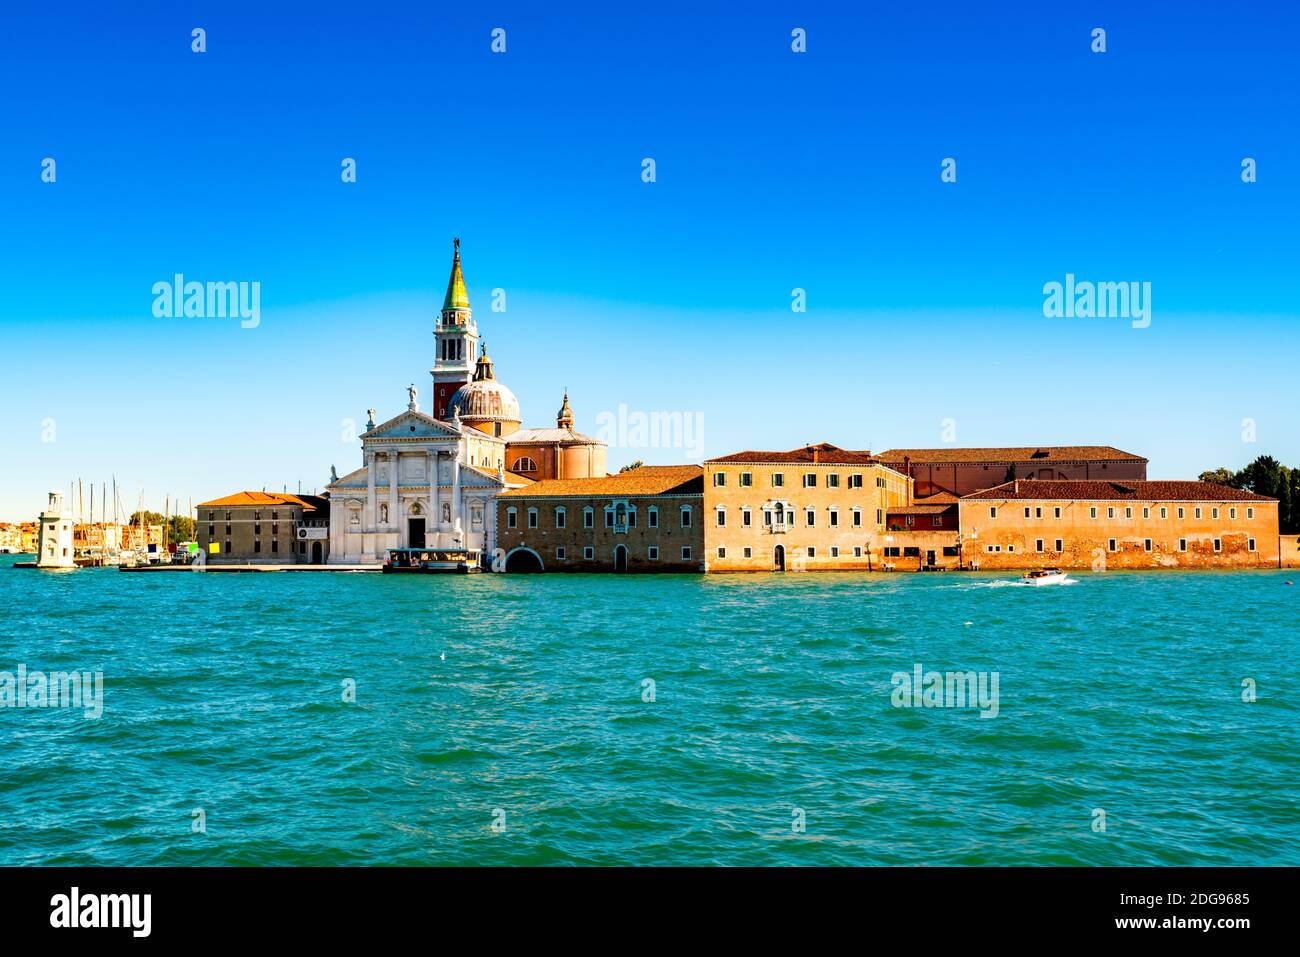 View of San Giorgio Maggiore at Venice Stock Photo